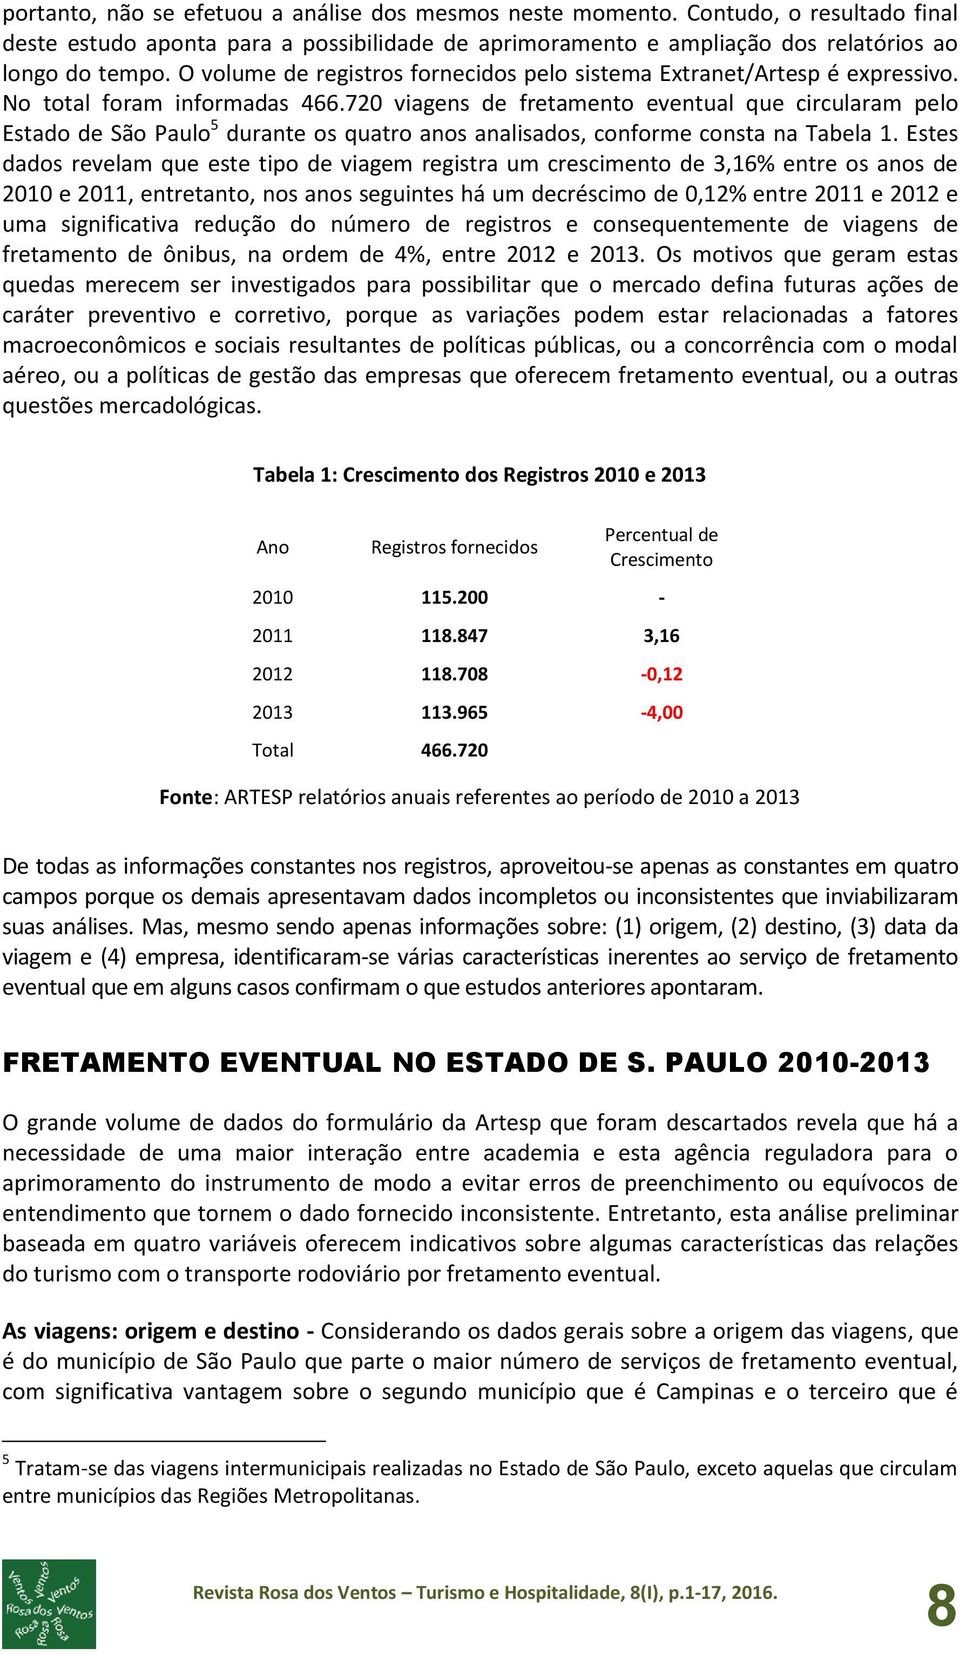 720 viagens de fretamento eventual que circularam pelo Estado de São Paulo 5 durante os quatro anos analisados, conforme consta na Tabela 1.